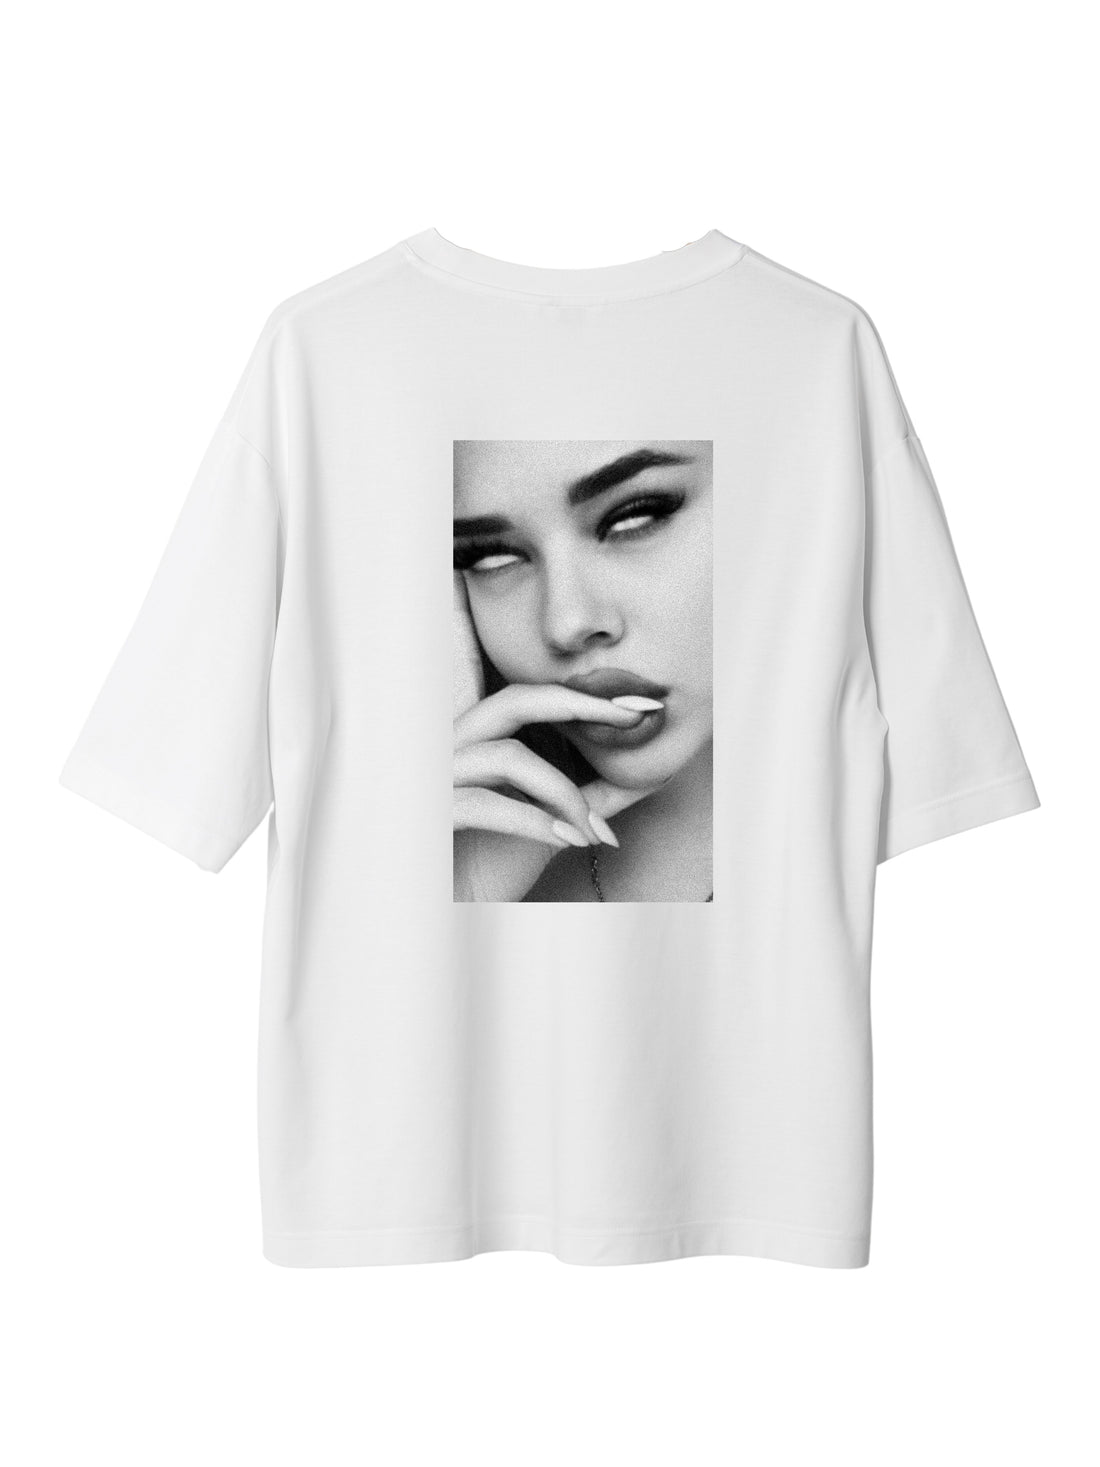 Rolling Eyes - Oversized Unisex Tee (T-shirt)